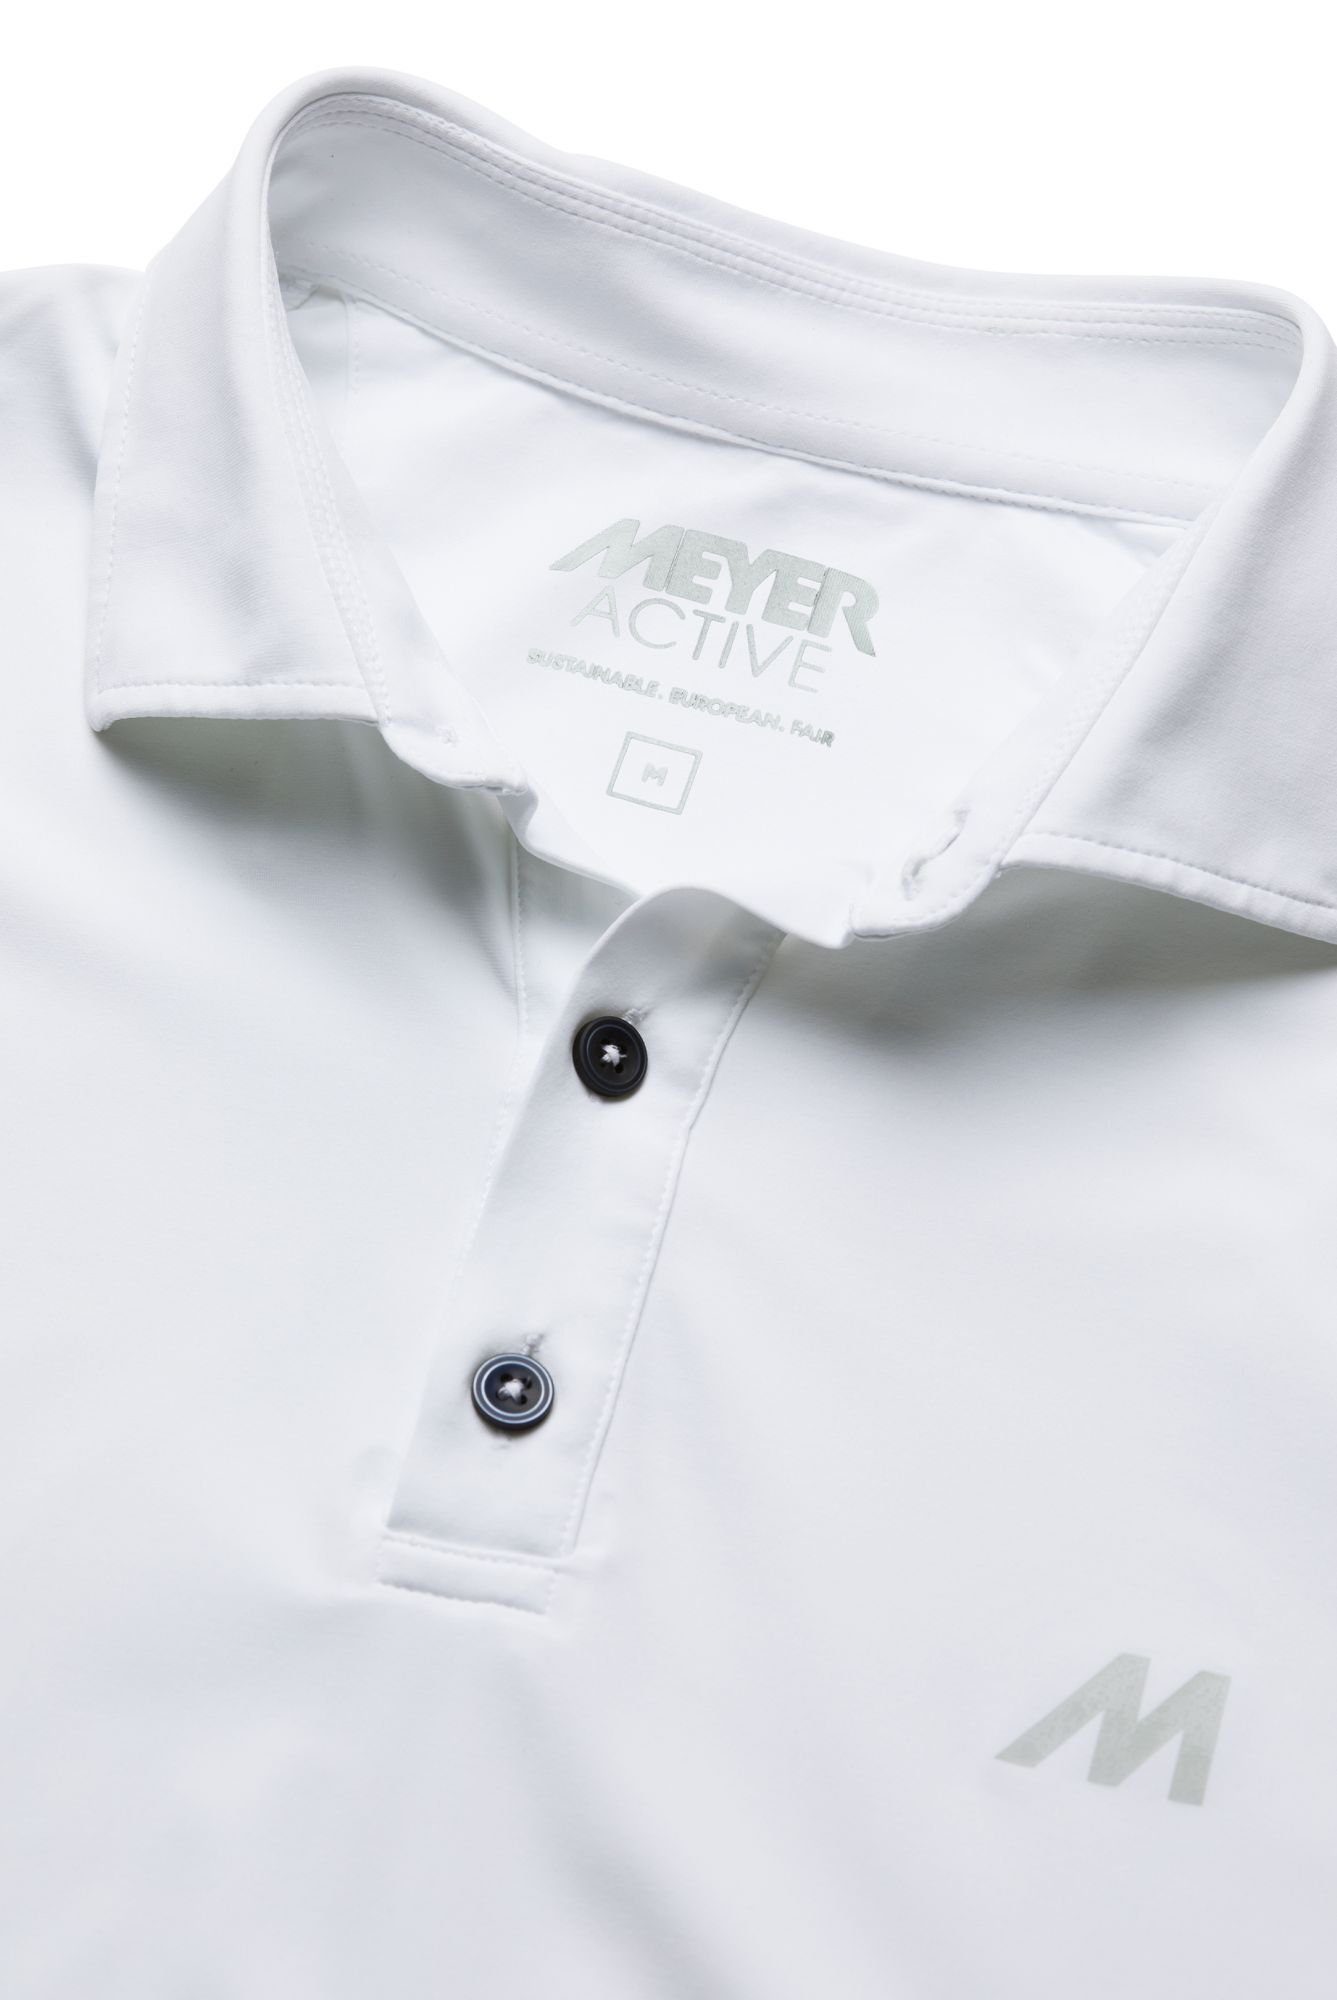 Tiger MEYER Poloshirt Nachhaltig white Europa in hergestellt wird